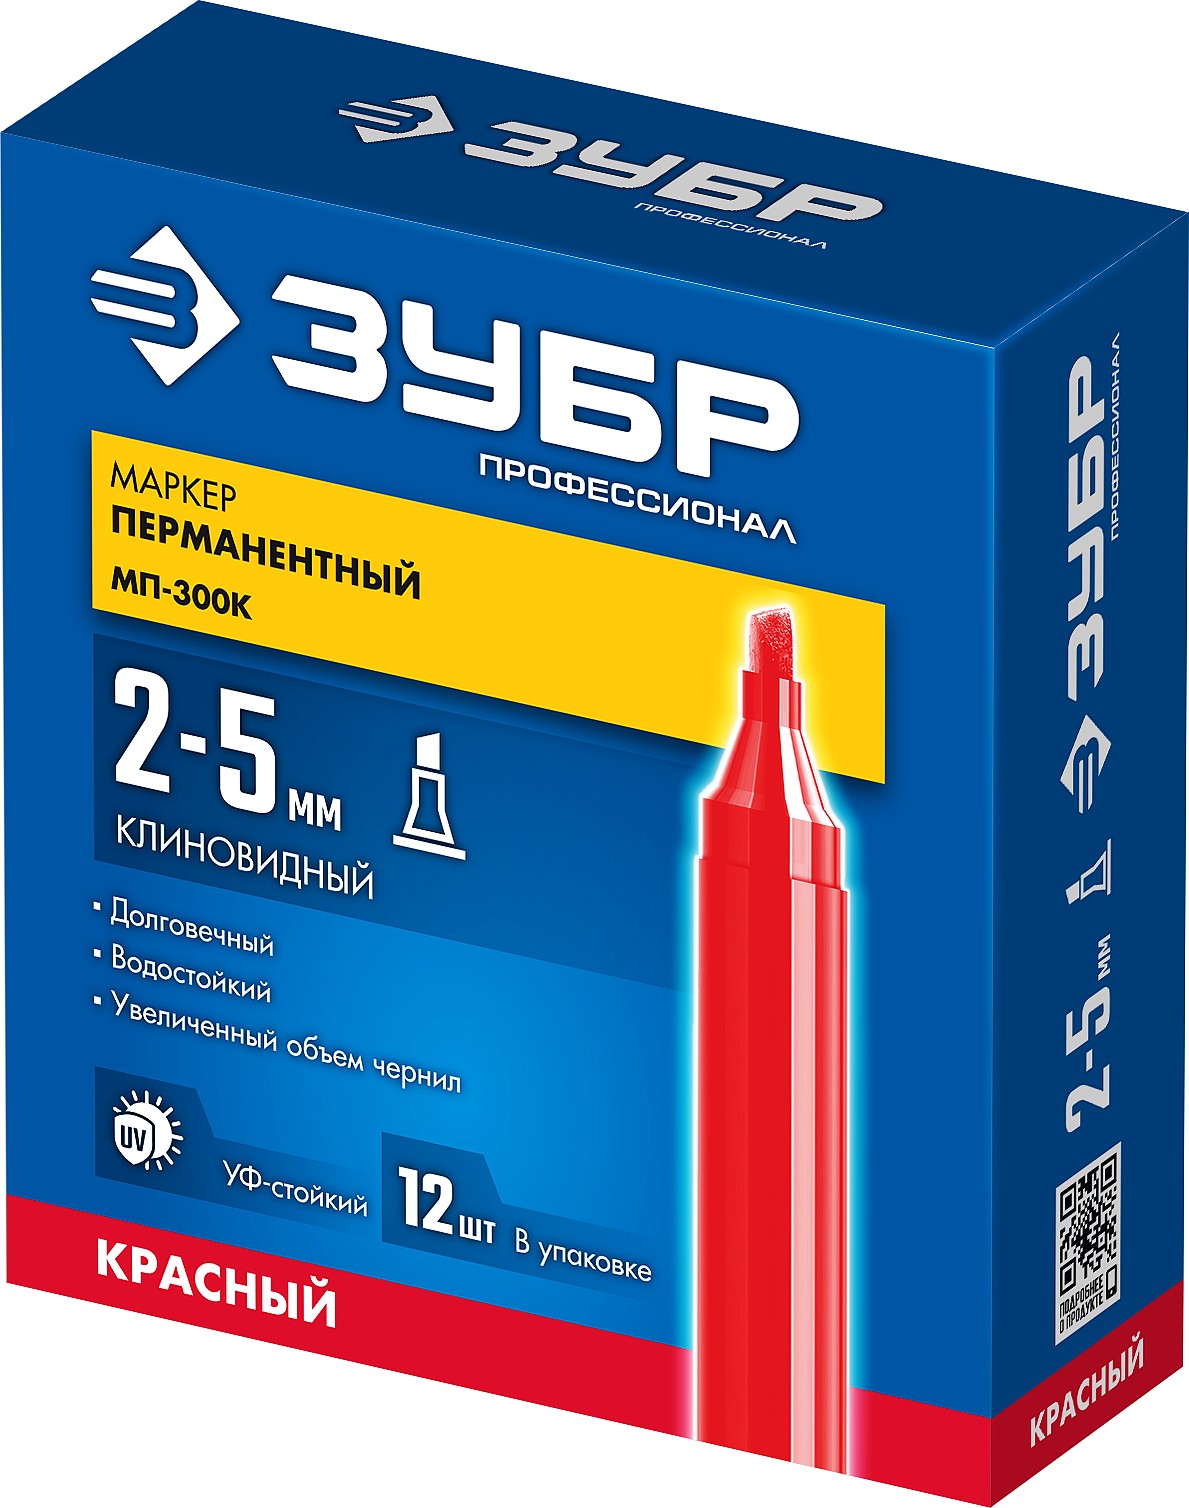 ЗУБР МП-300К 2-5 мм, клиновидный, красный, Перманентный маркер, ПРОФЕССИОНАЛ (06323-3)